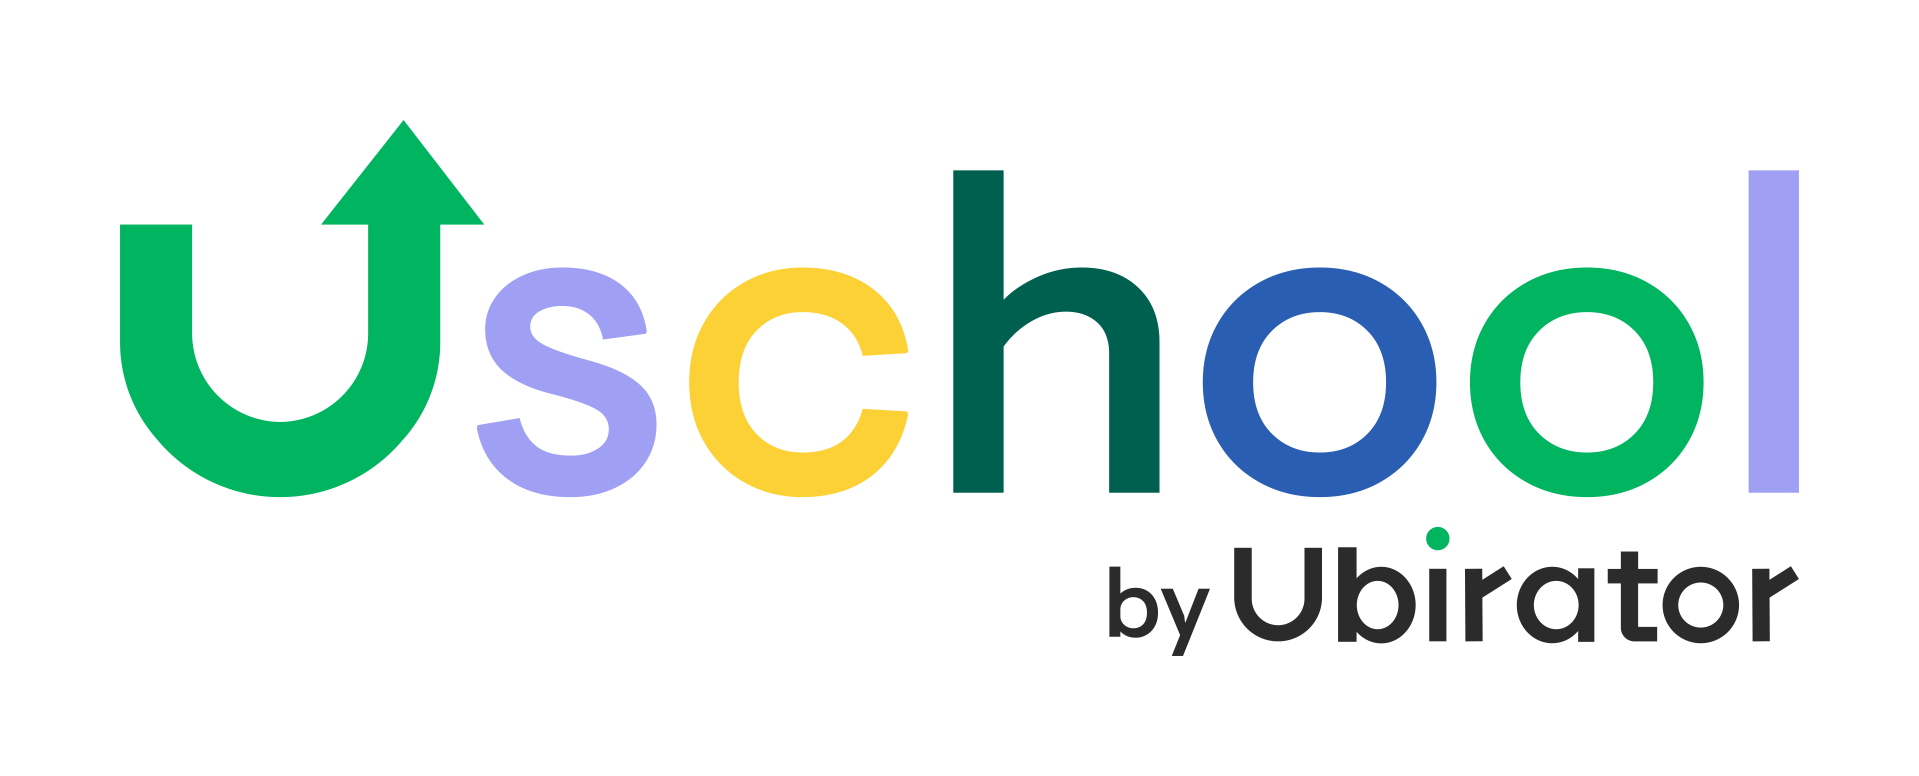 Uschool_logo